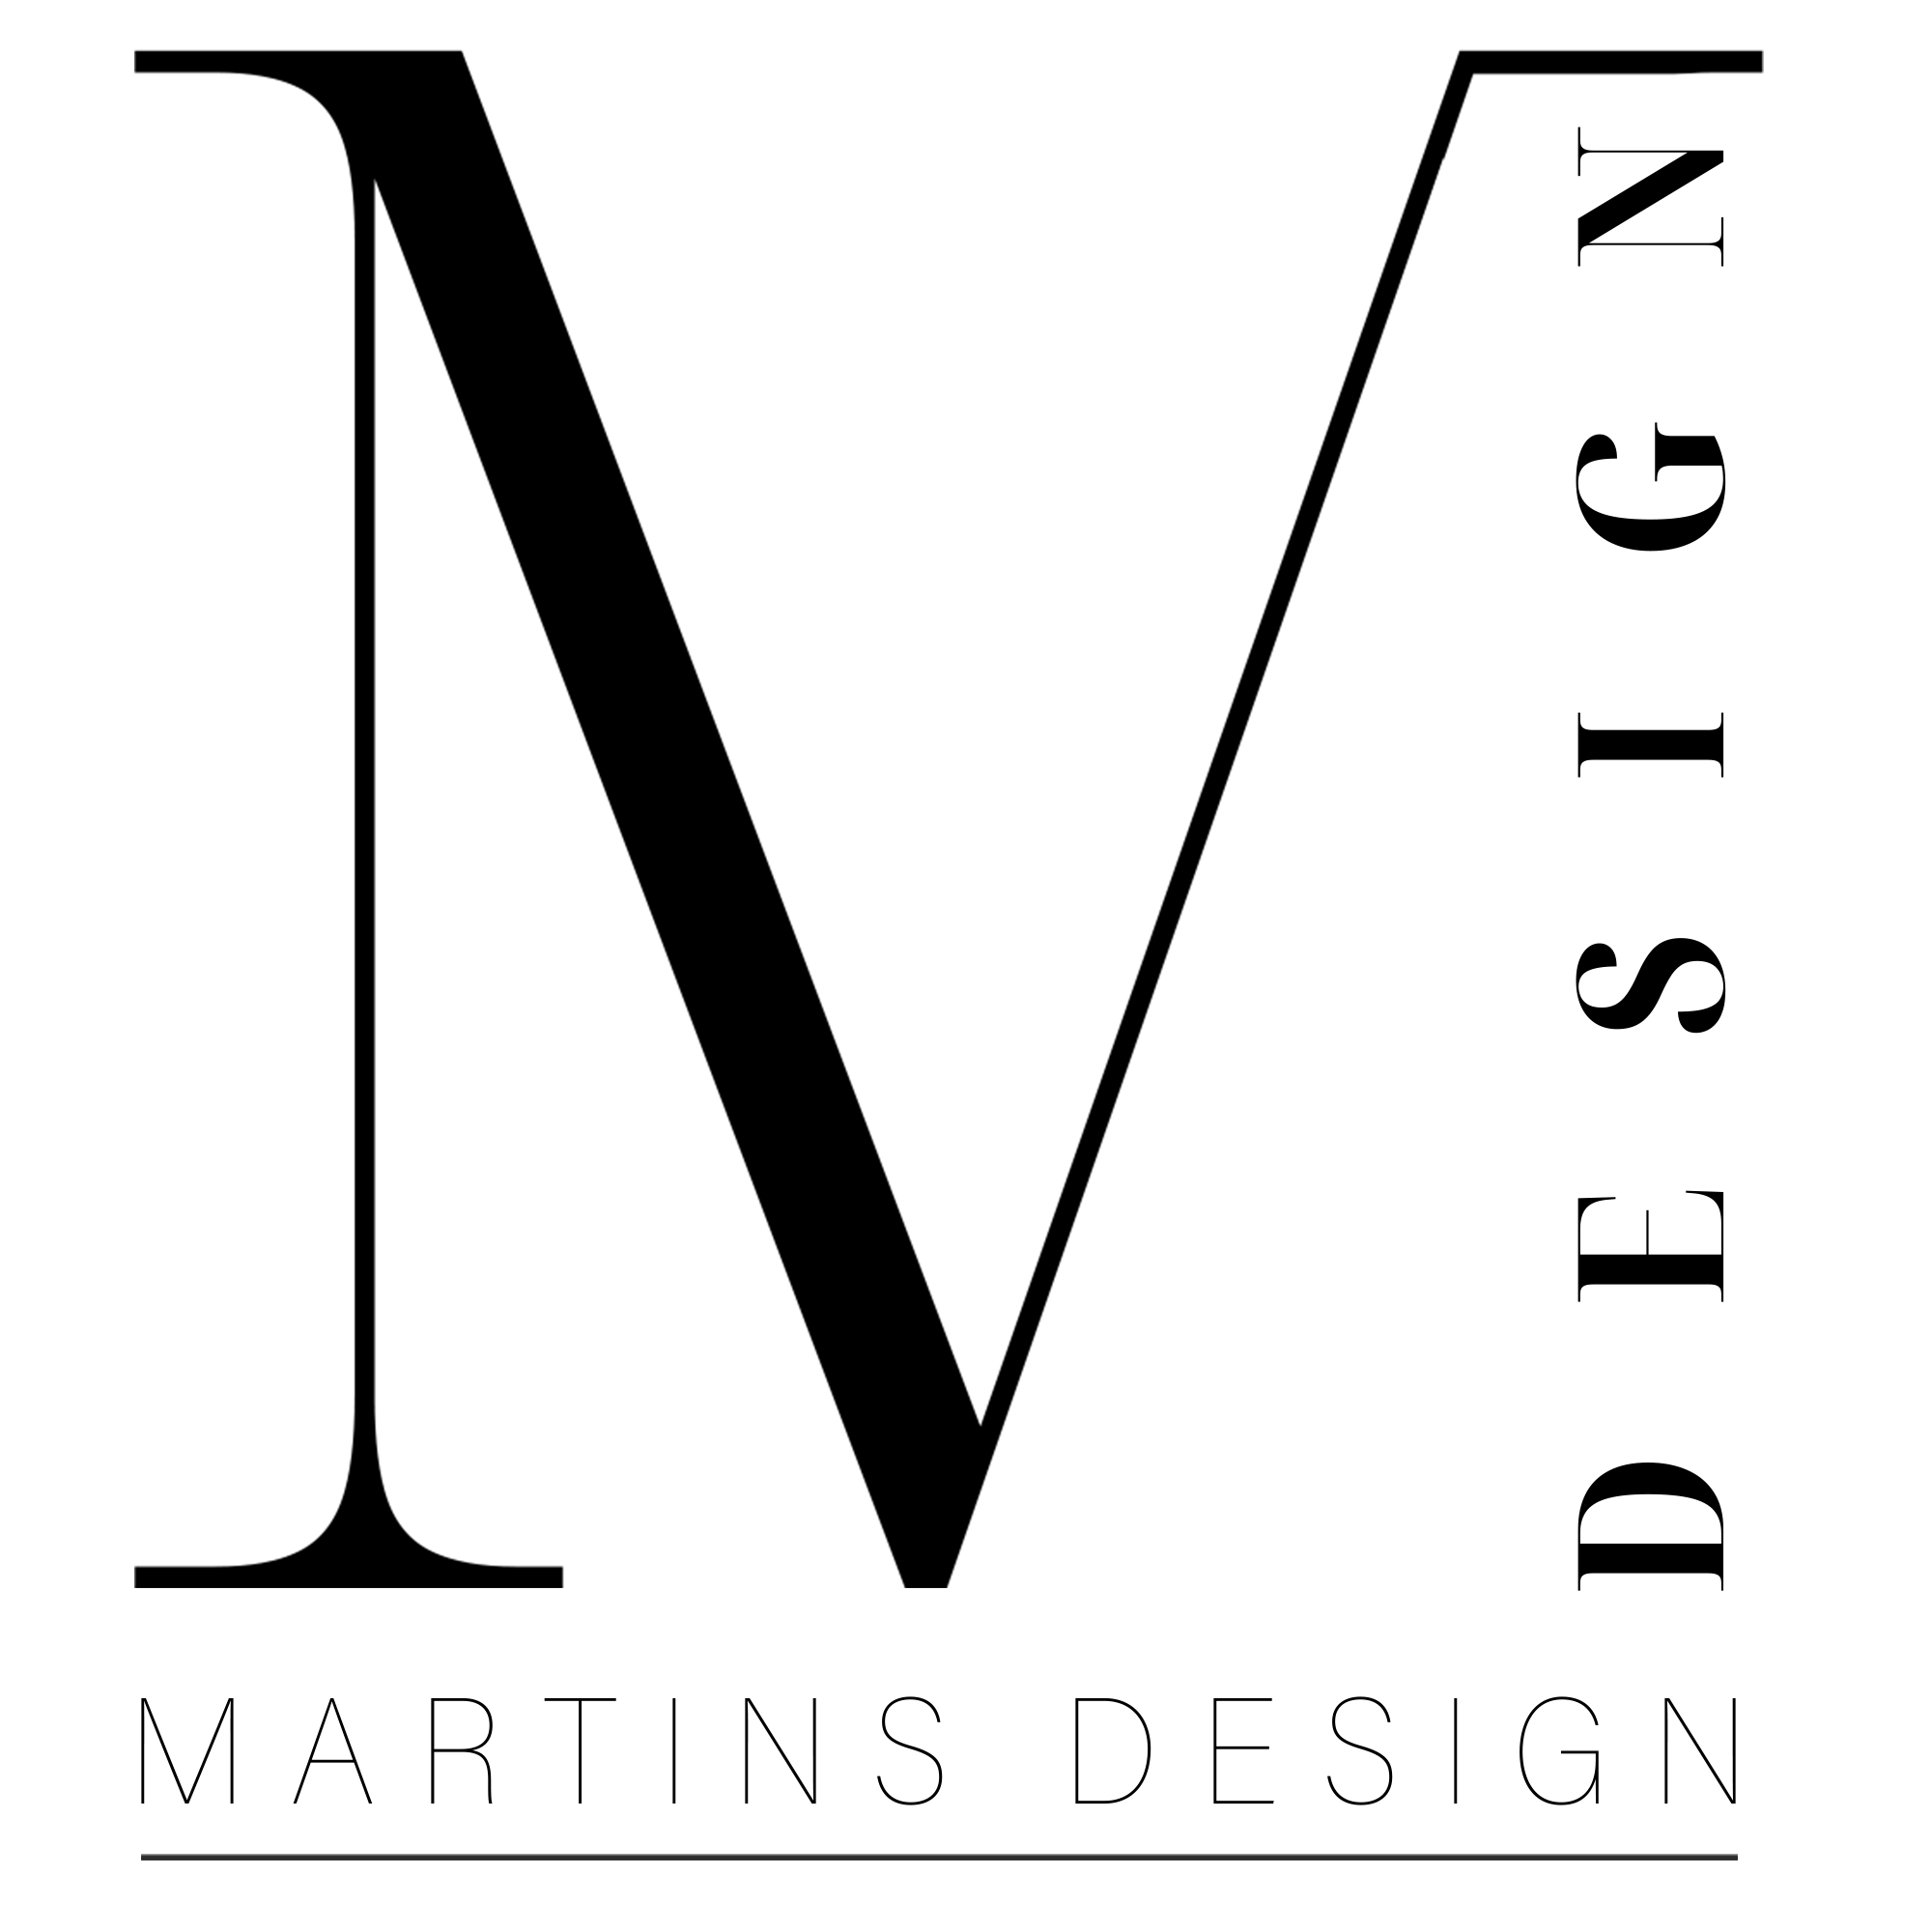 martins design logo